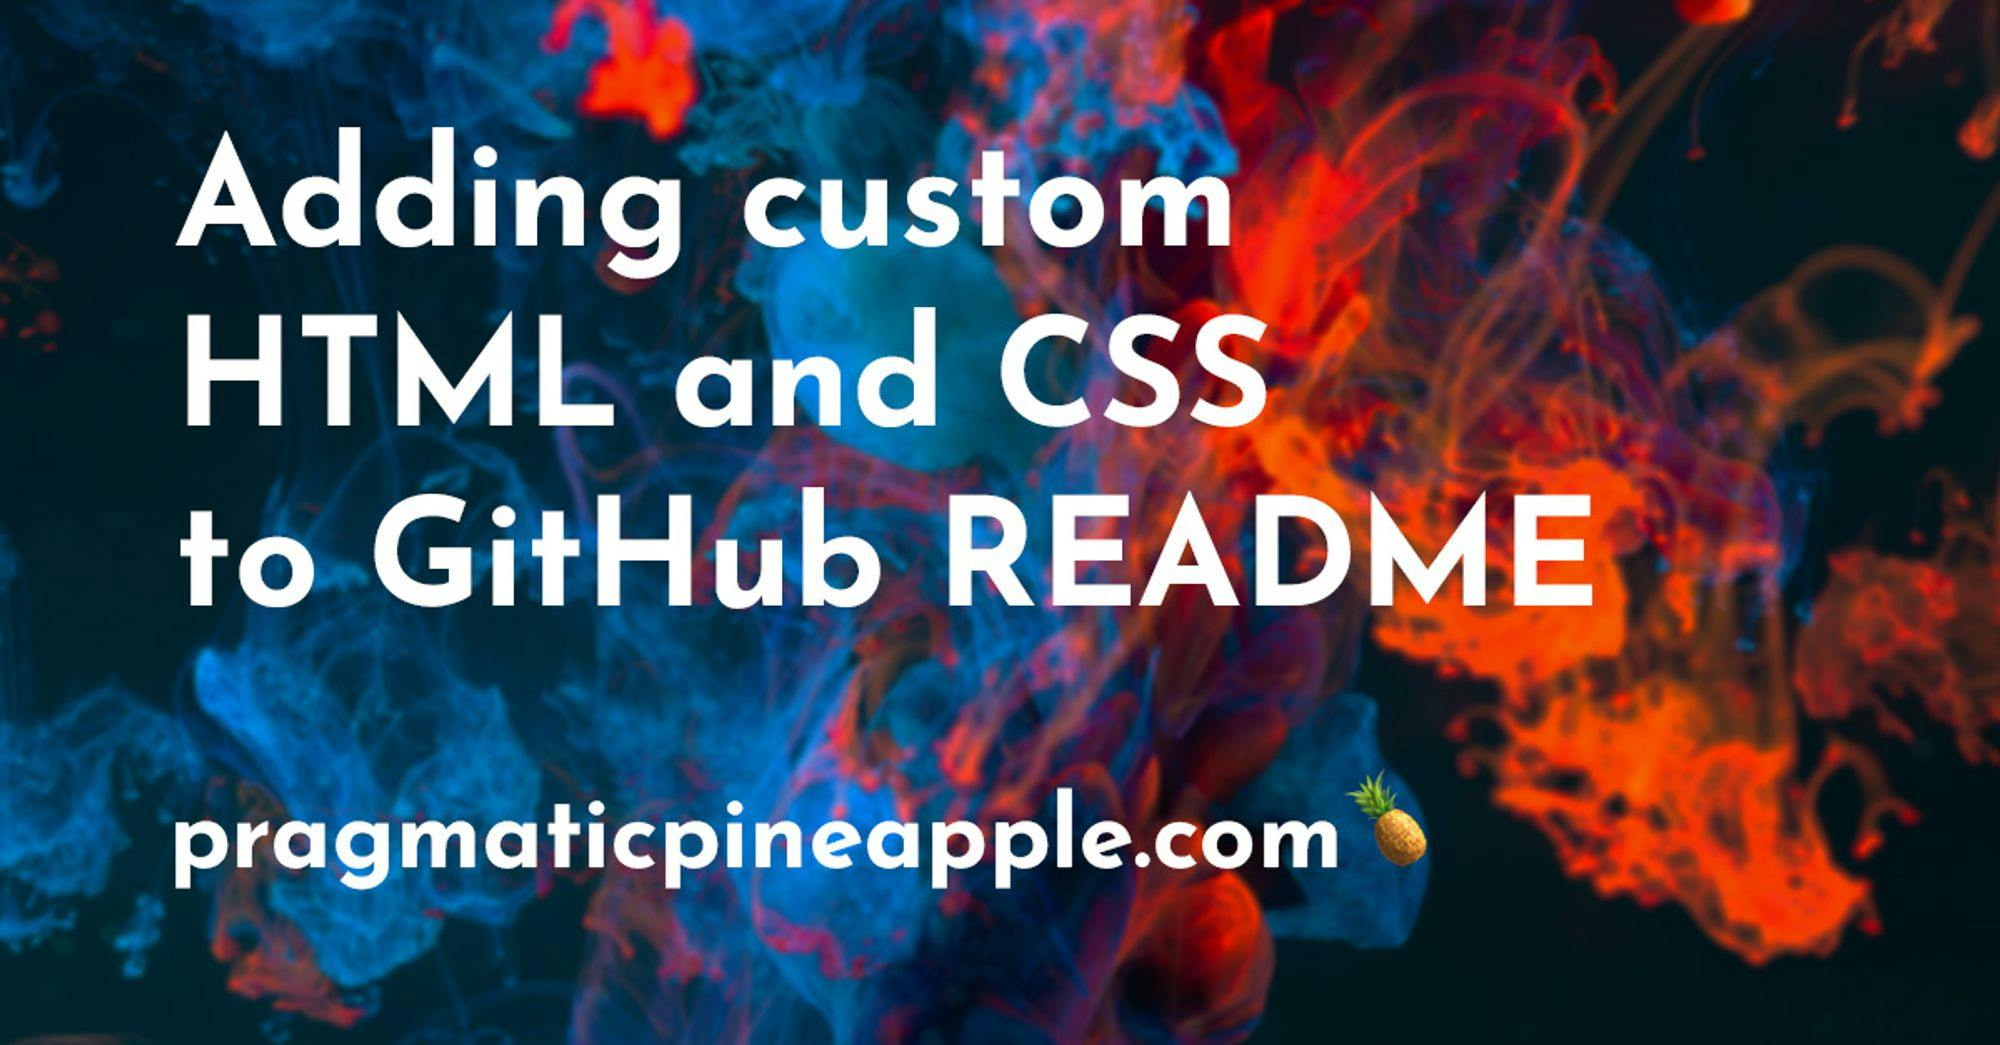 Adding custom HTML and CSS to GitHub README